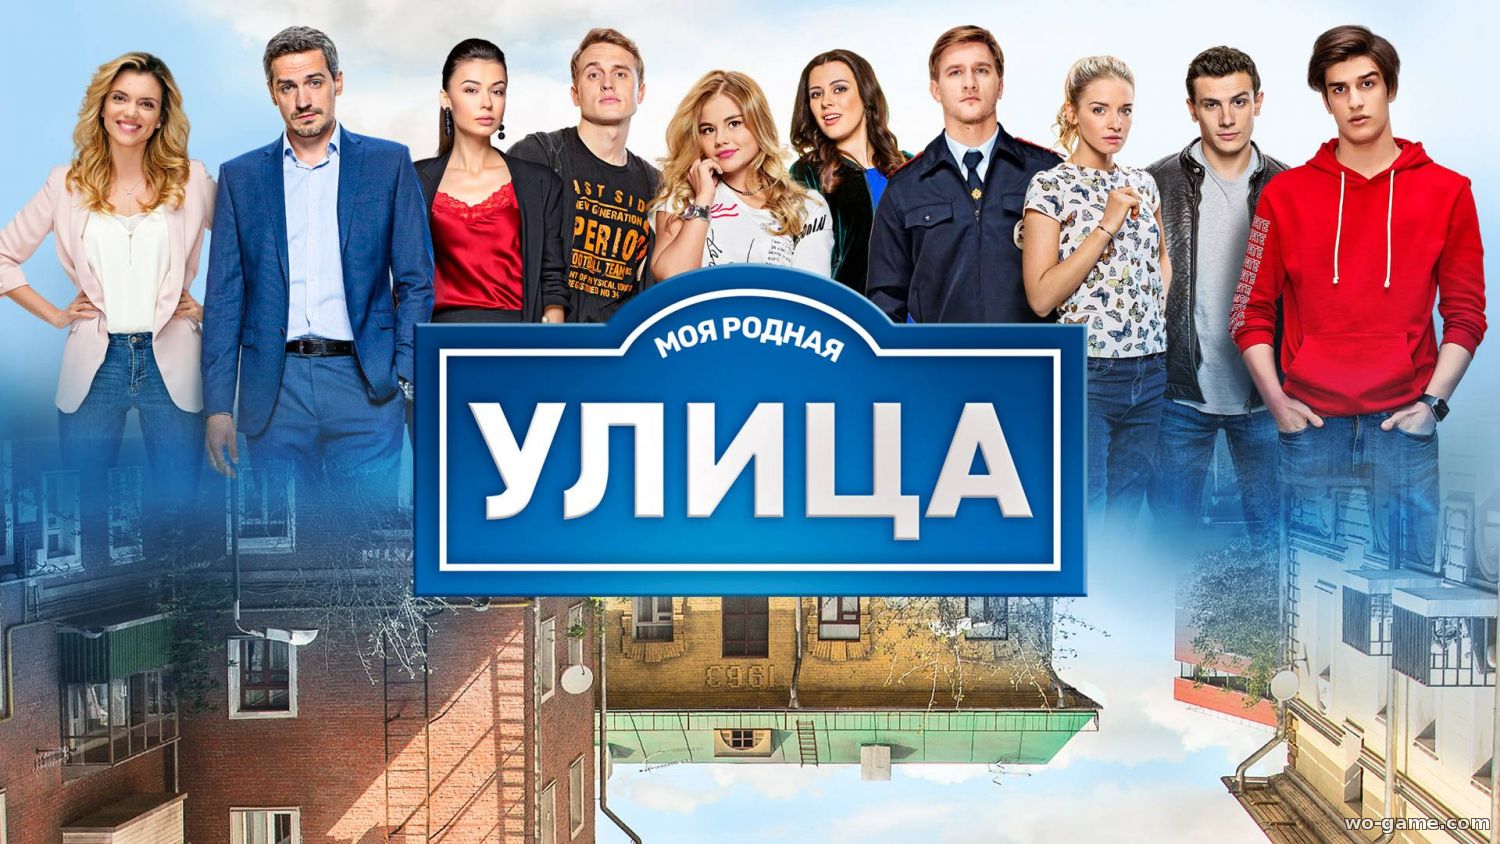 Улица 1-3 сезон Русский сериал 2017 смотреть онлайн все серии